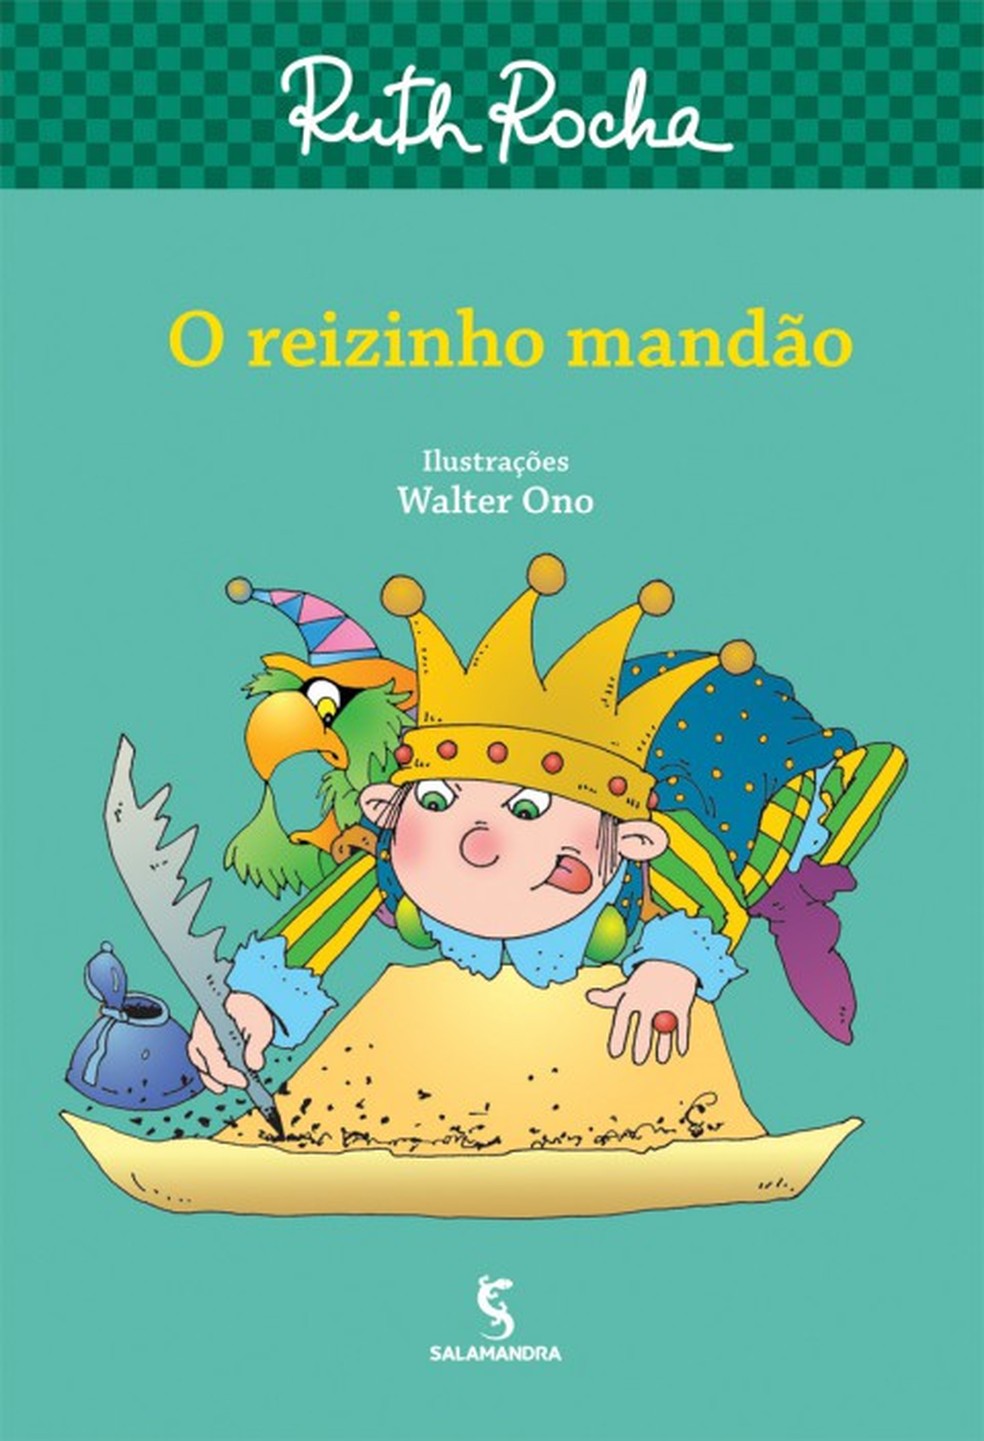 Capa do livro 'O reizinho mandão', de Ruth Rocha — Foto: Divulgação